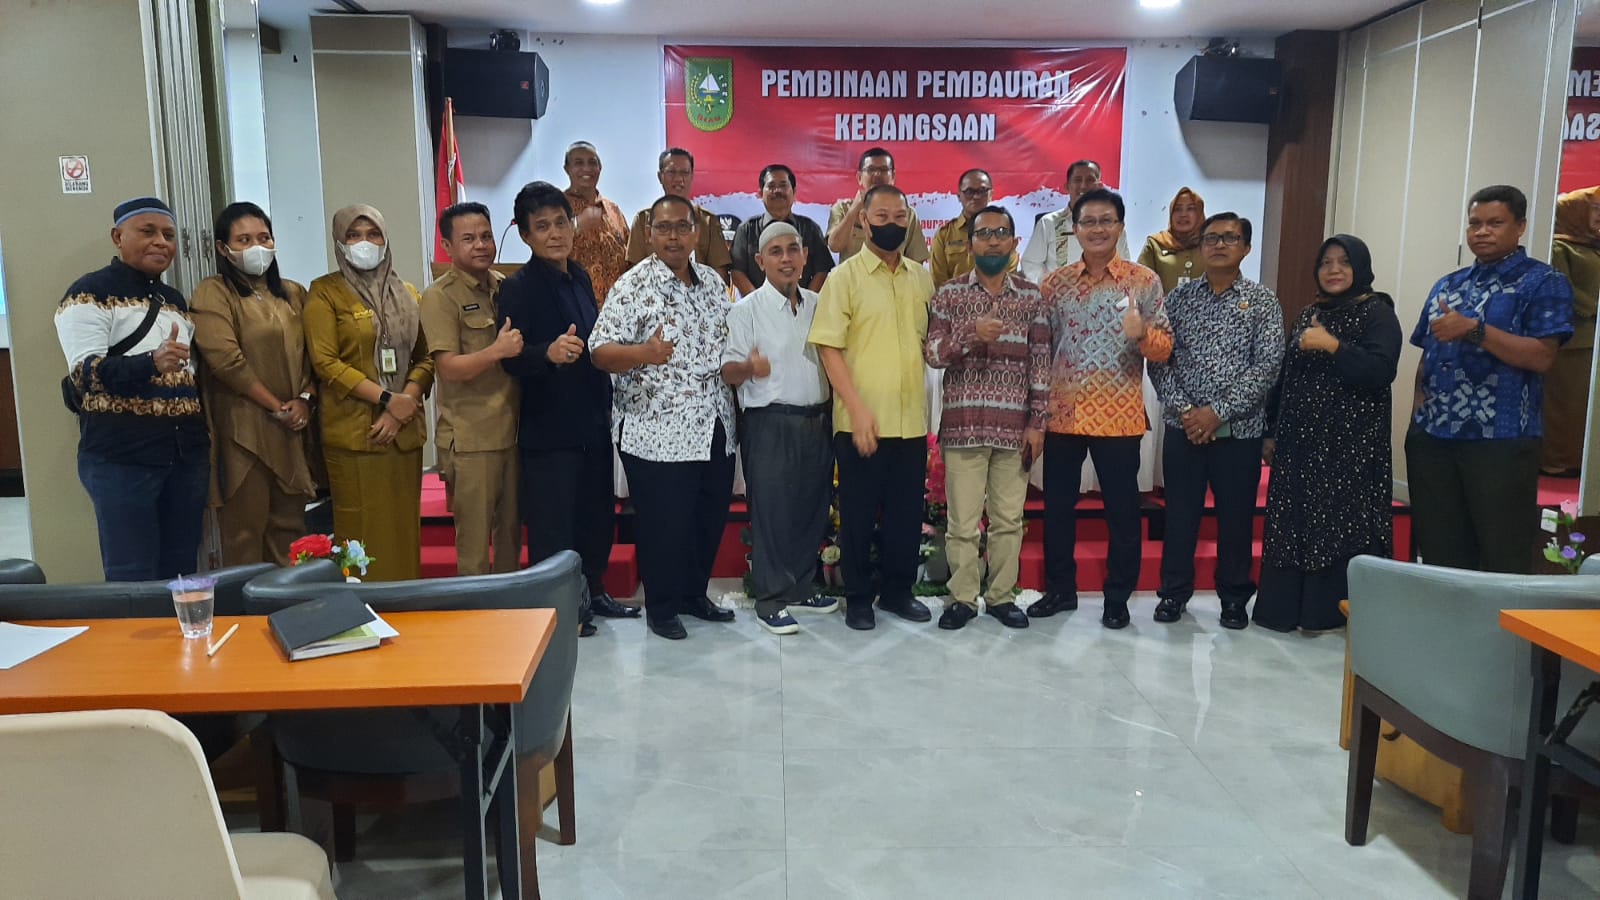 Badan Kesbangpol Provinsi Riau Gelar Pembinaan Pembauran Kebangsaan